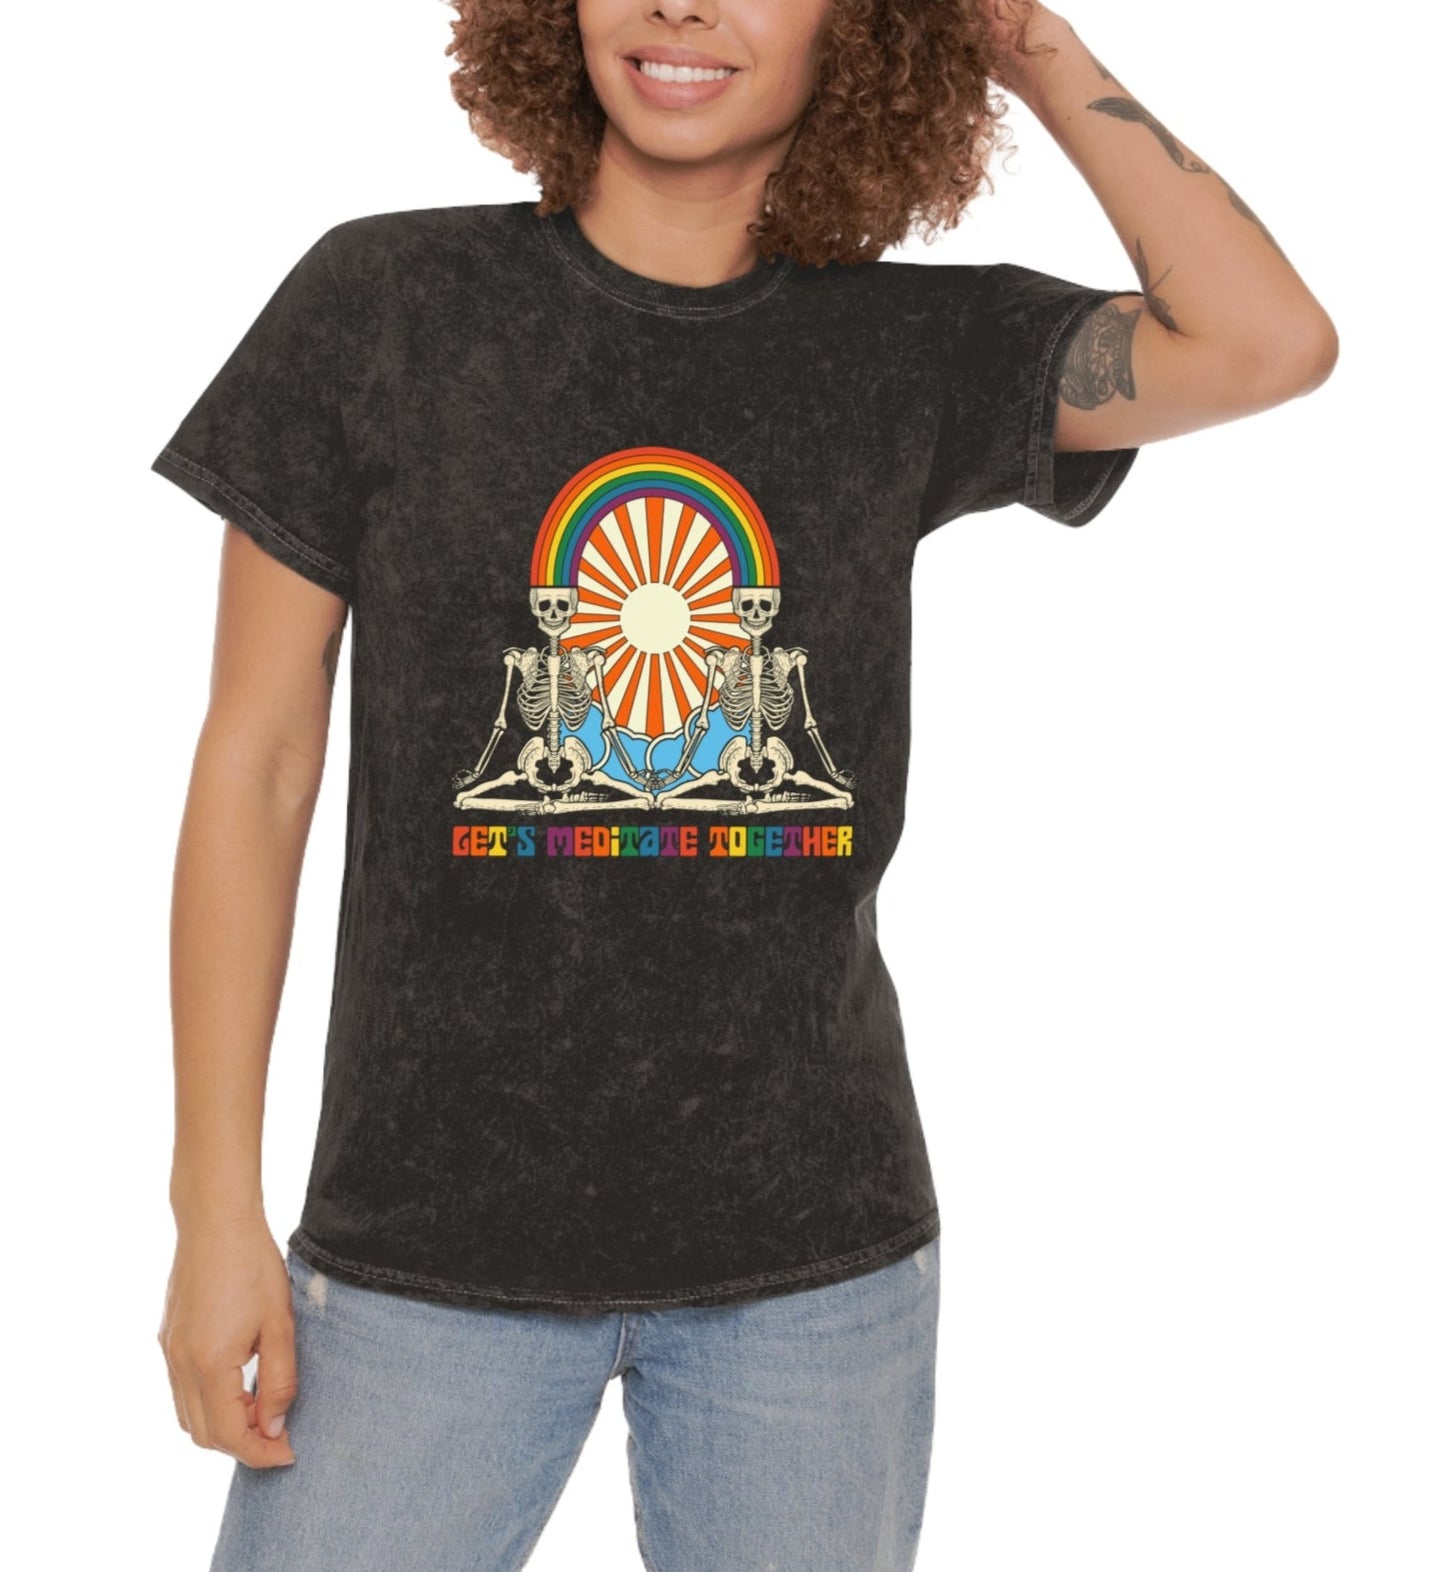 Get's meditate together Unisex T-Shirt